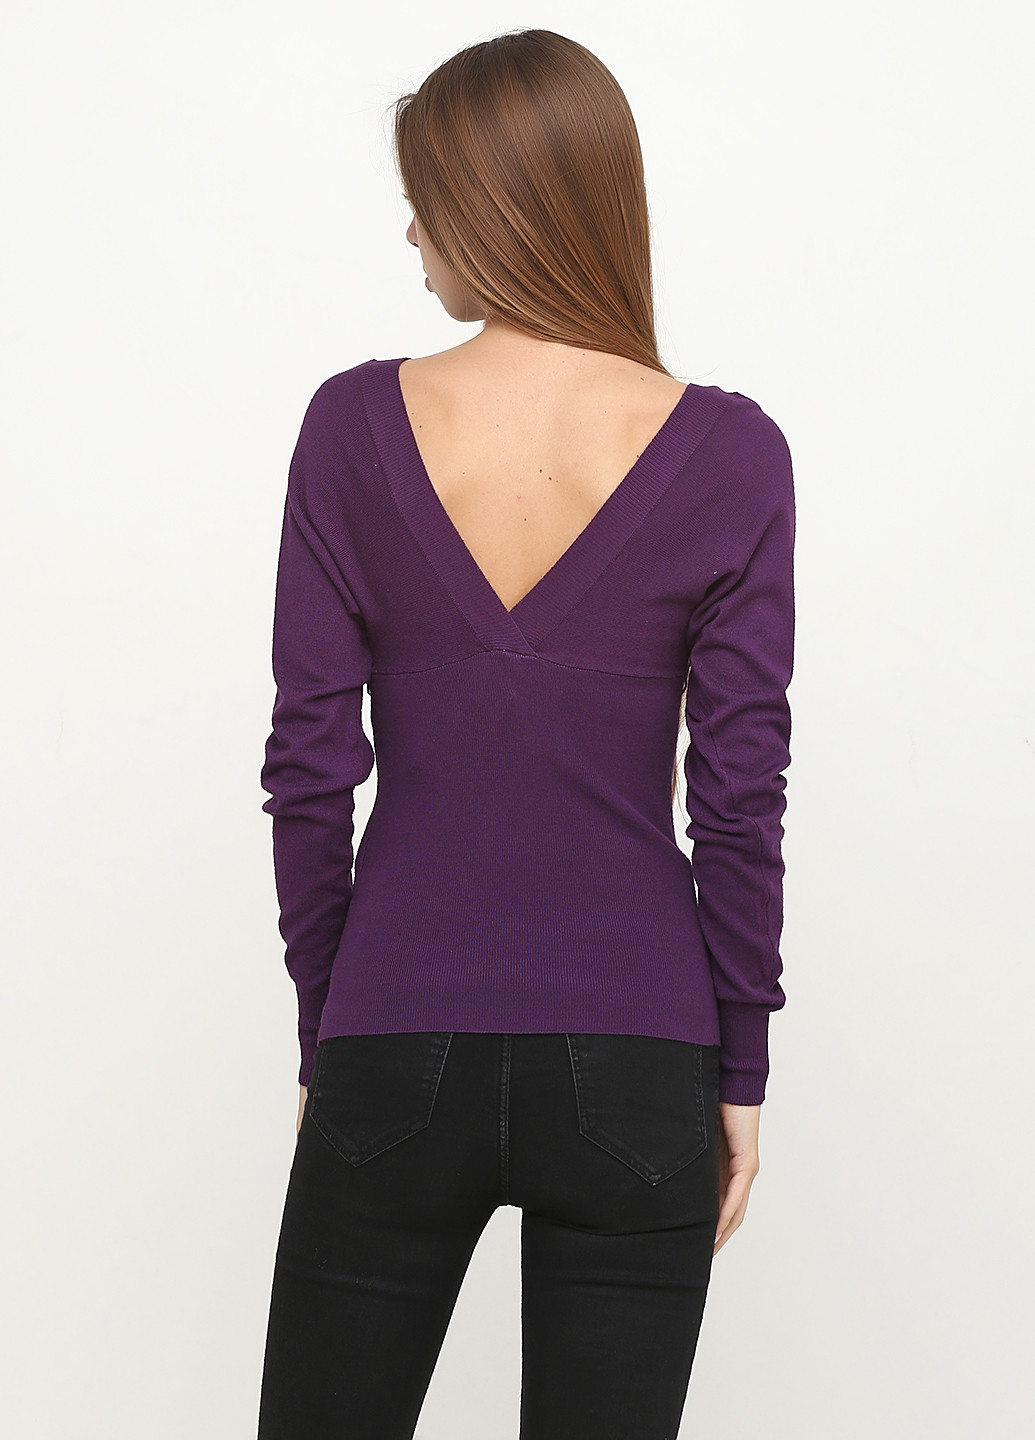 Фиолетовый демисезонный пуловер пуловер Fornarina